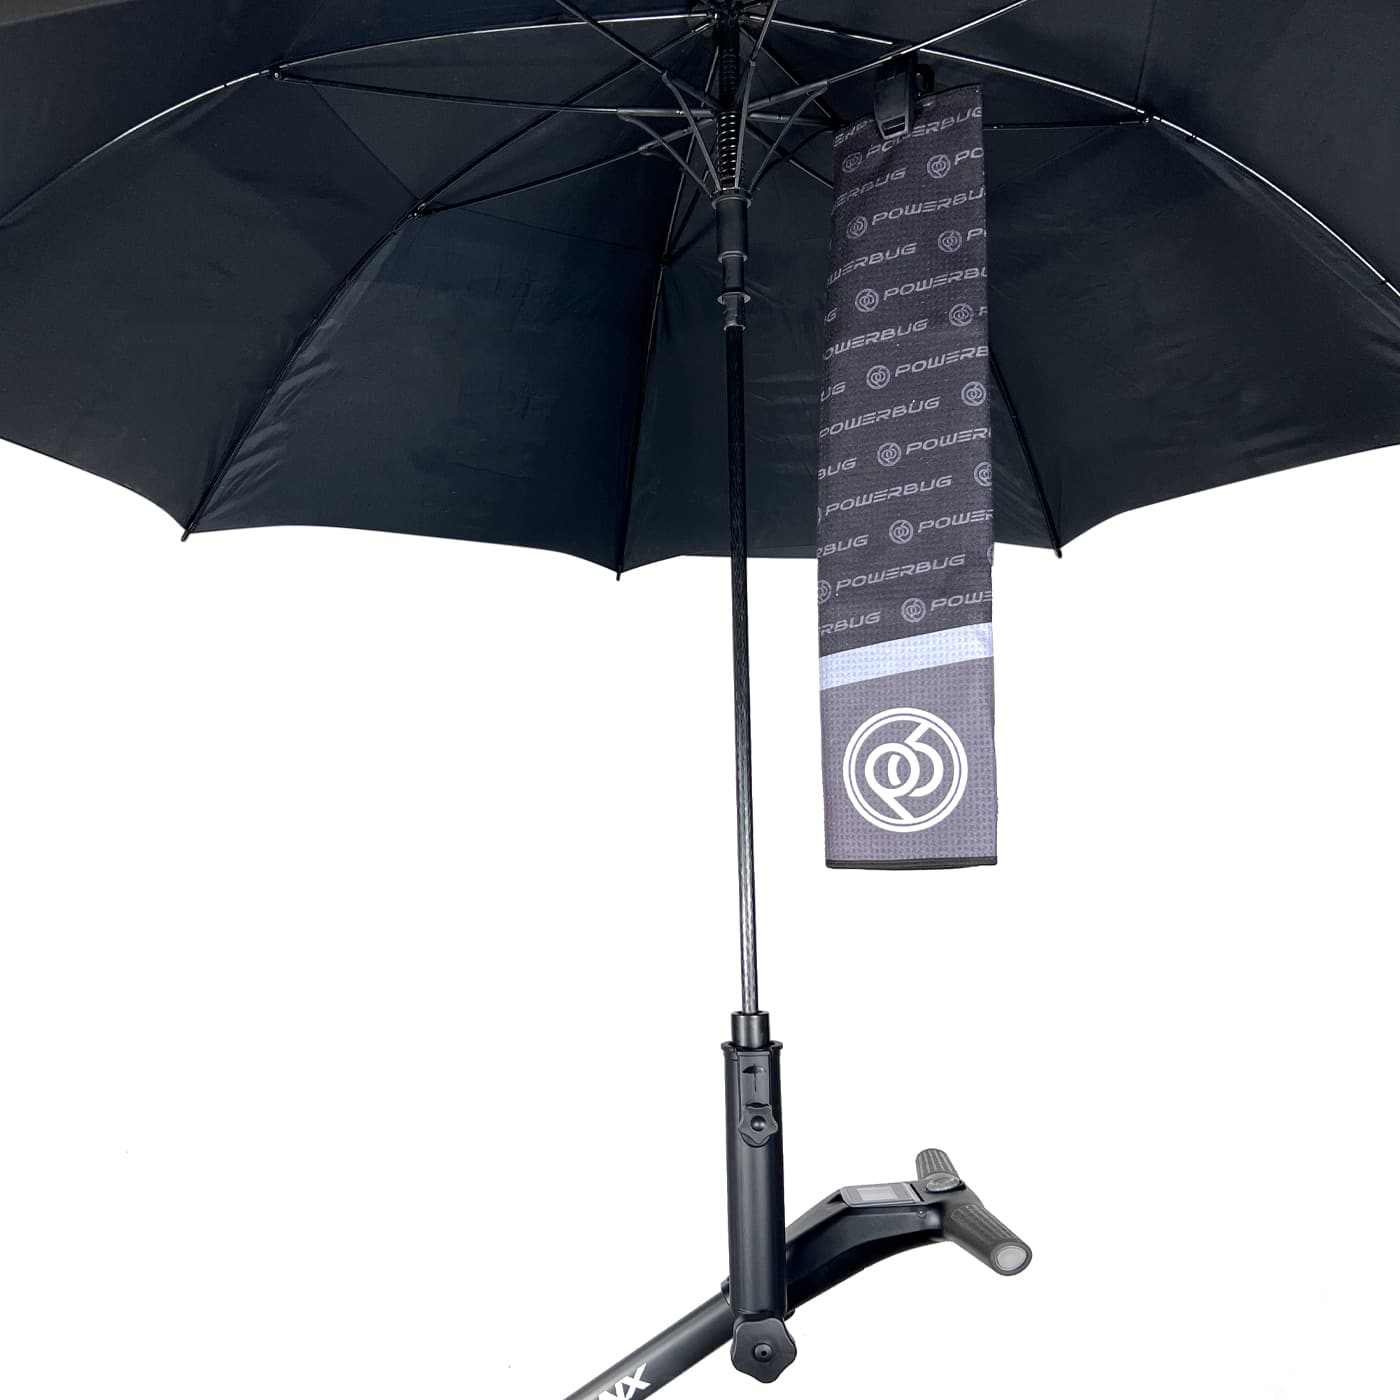 Towel clip golf umbrella mount